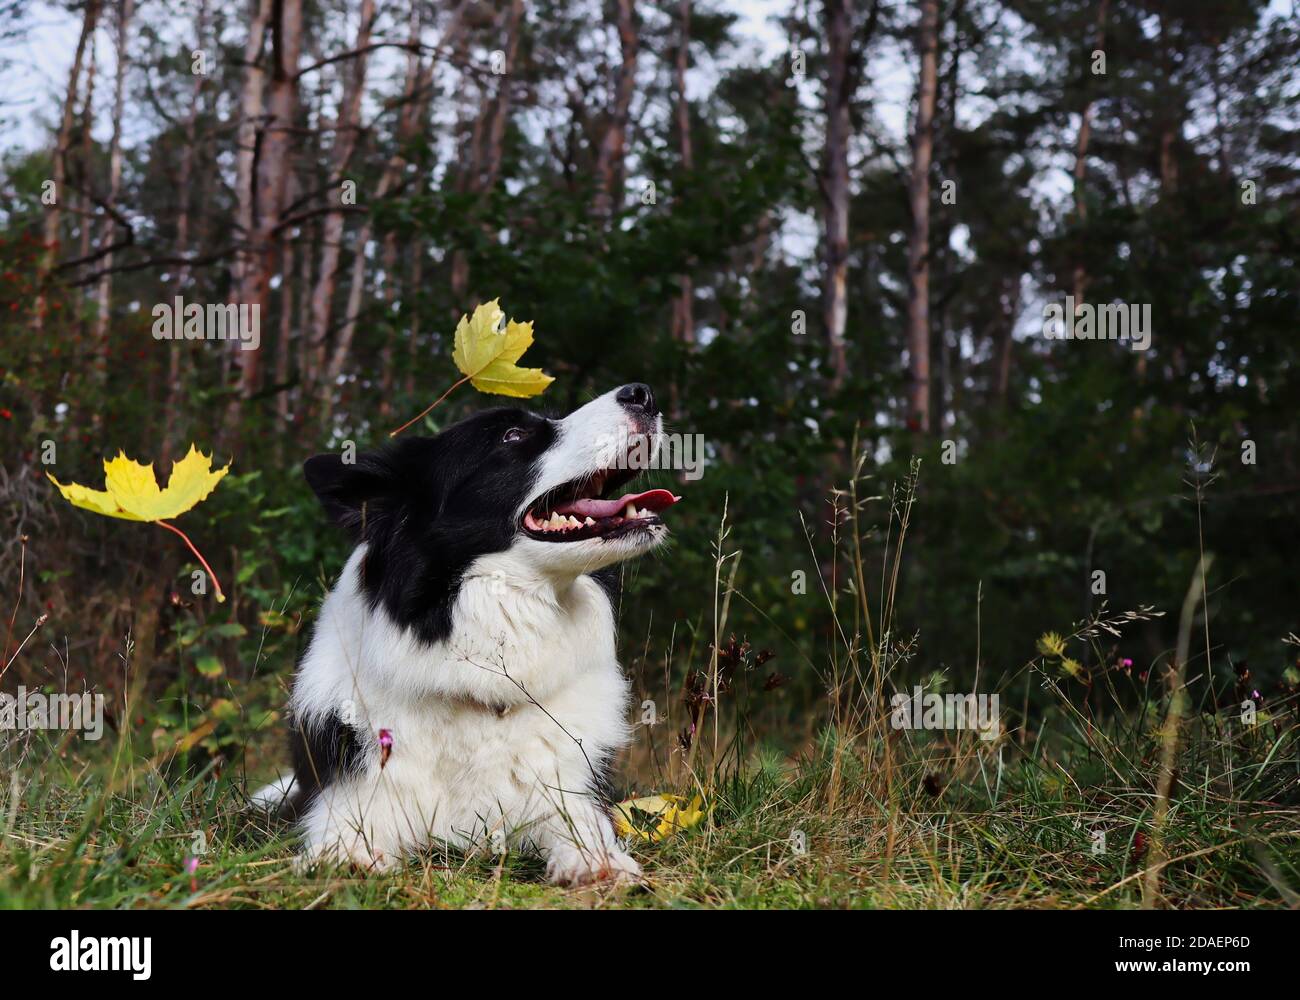 Adorable chien de Collie border se trouve dans la forêt avec des feuilles qui tombent. Animal noir et blanc aime la journée dans la nature. Banque D'Images